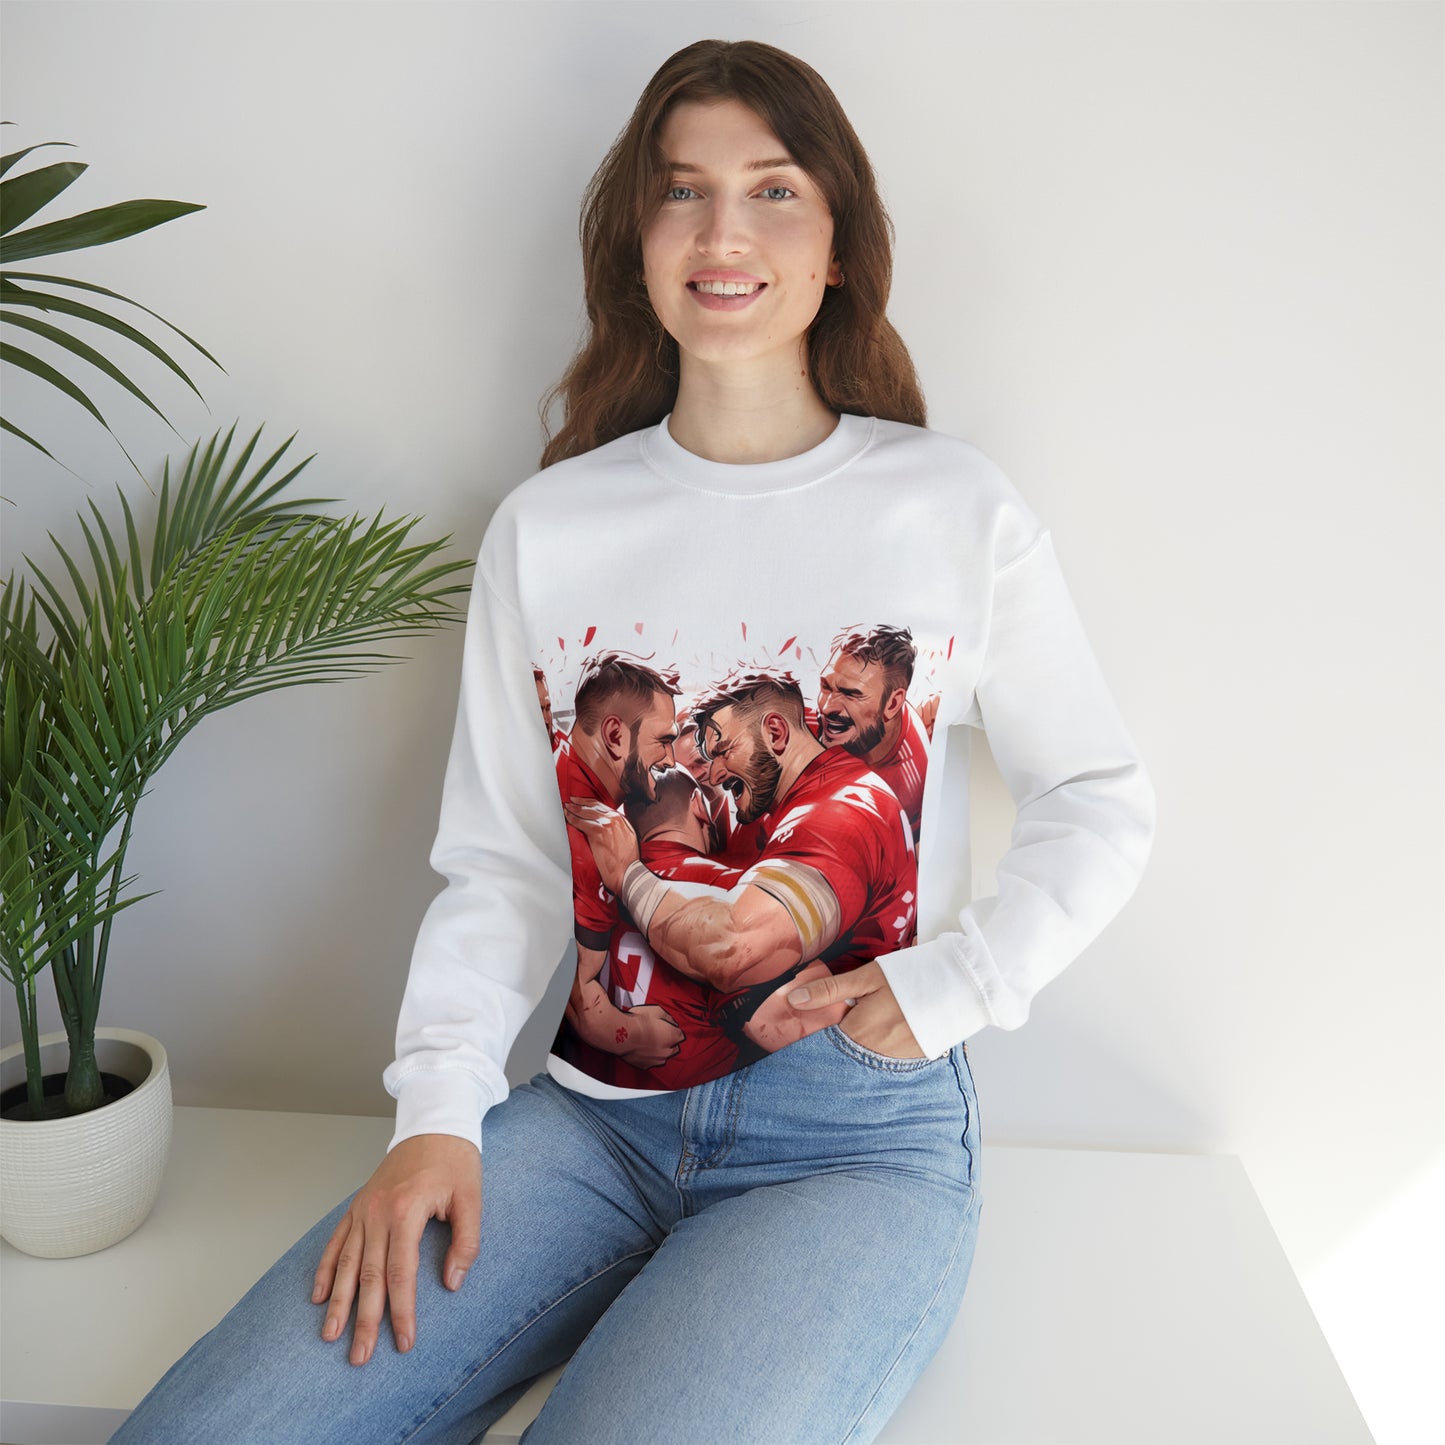 Post Match Wales - light sweatshirts